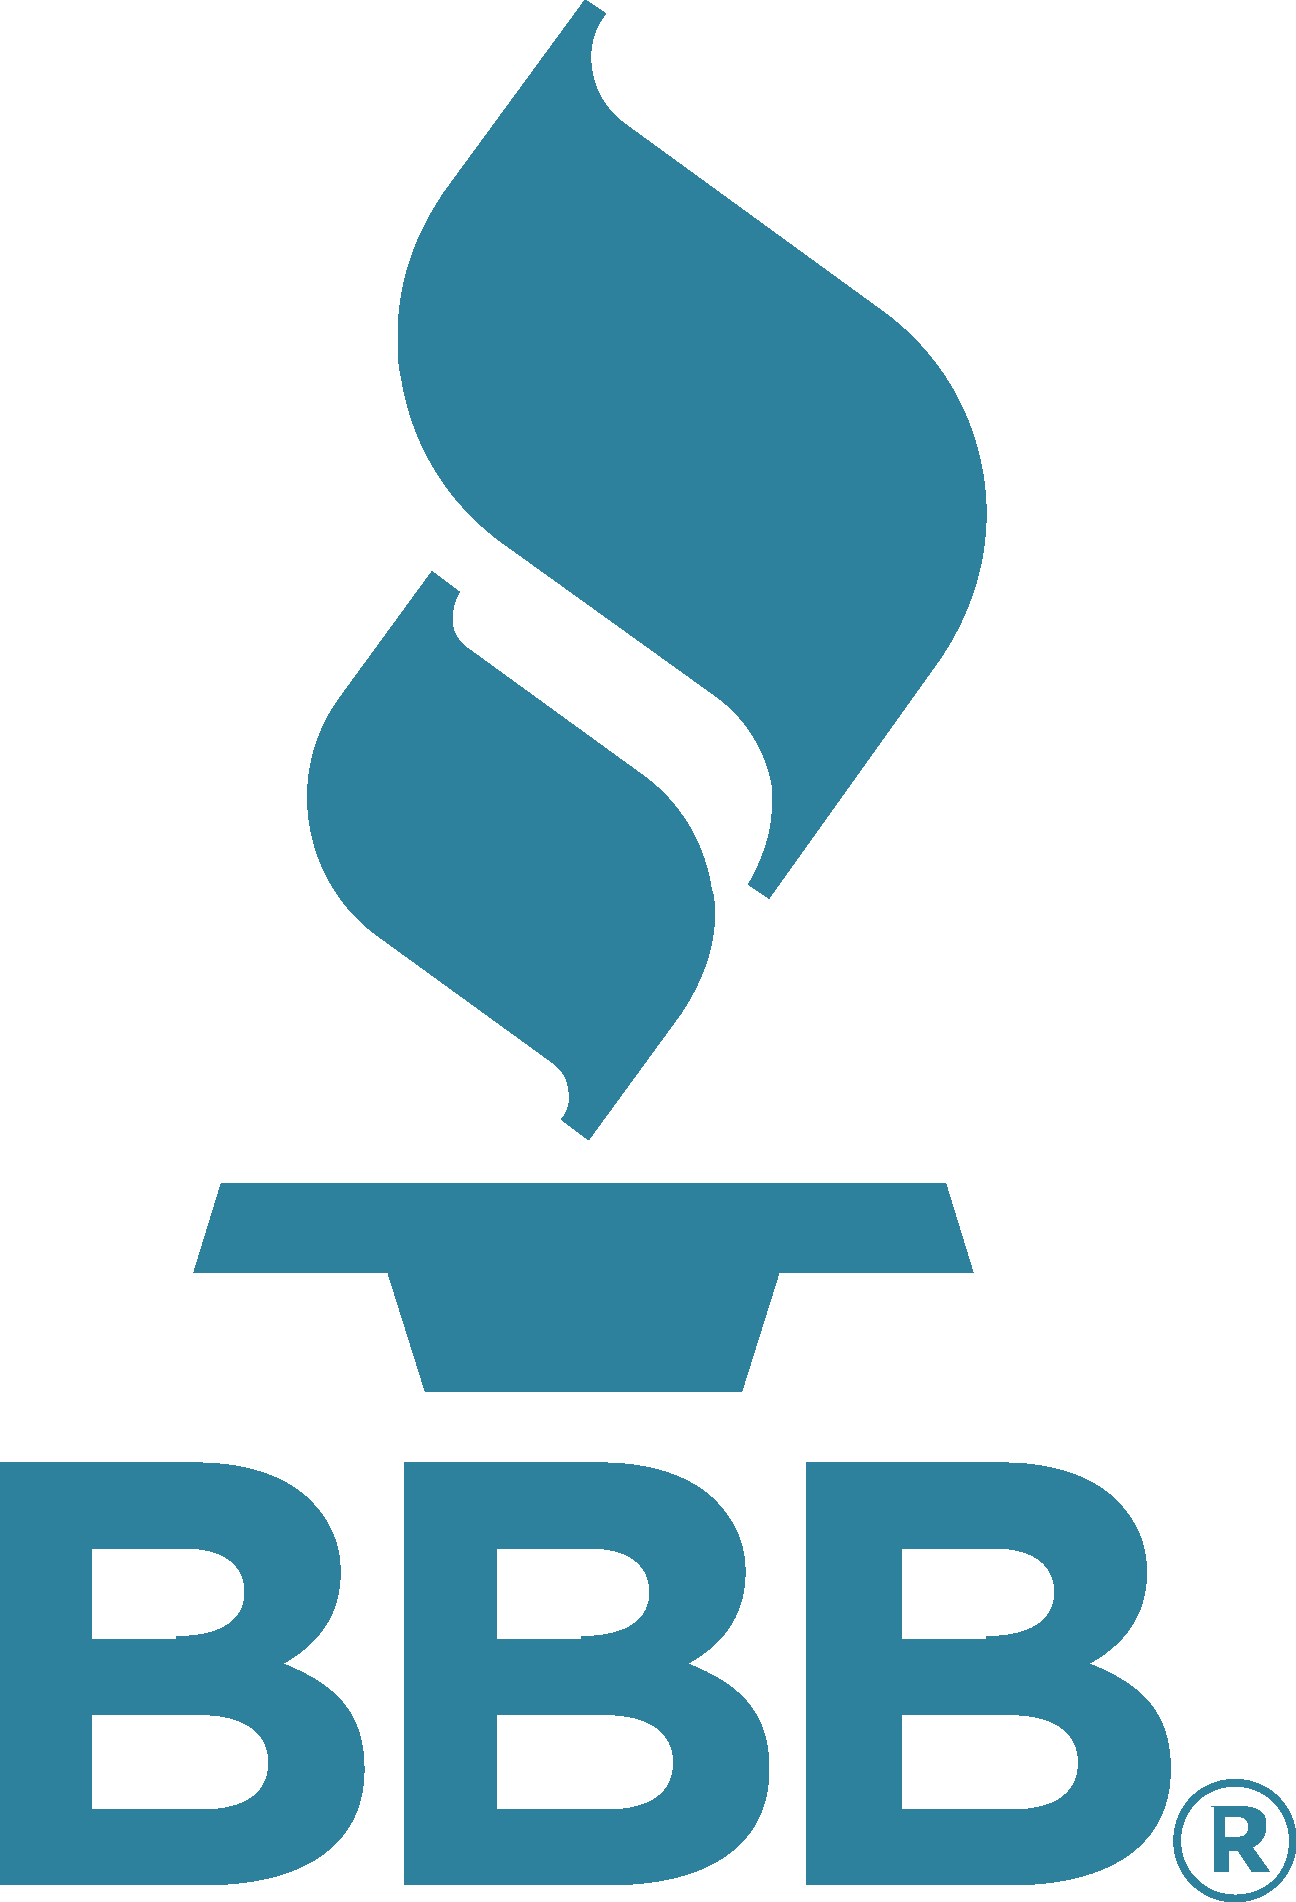 Better Business Bureau (BBB) Logo png